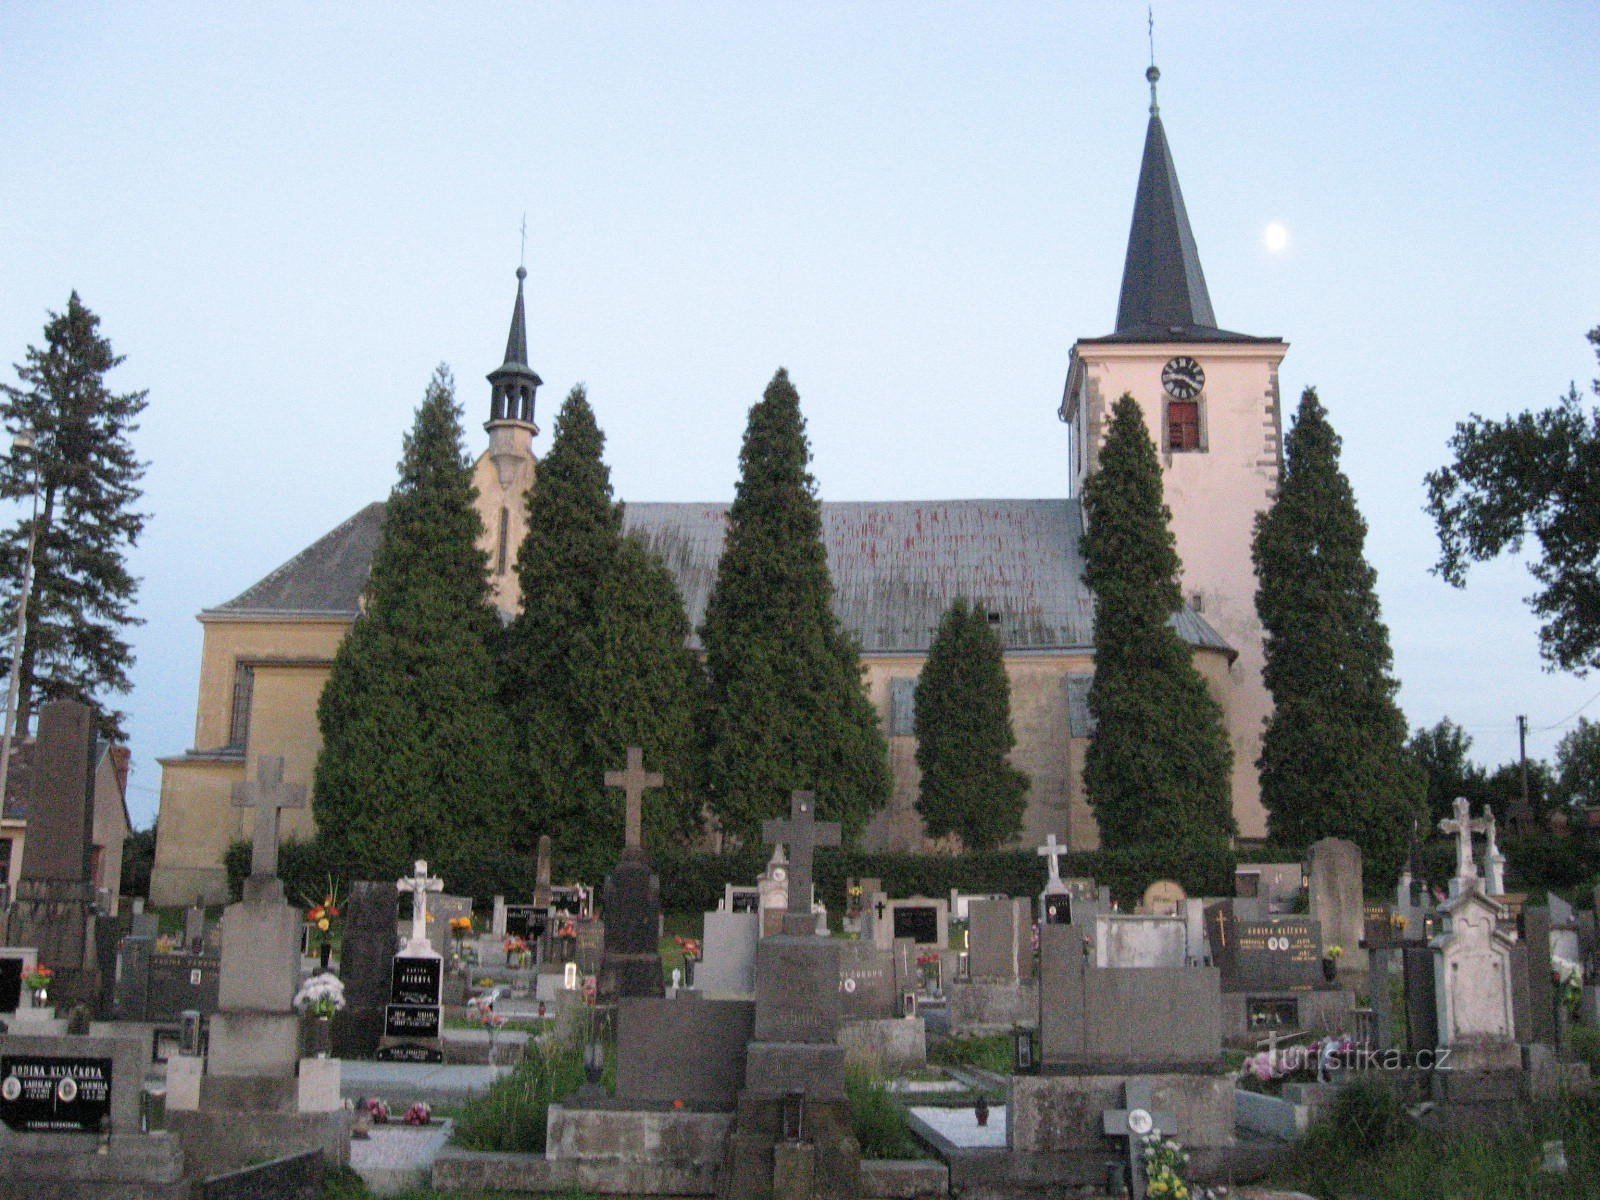 кладбище и церковь св. Йиржи в Кунчине